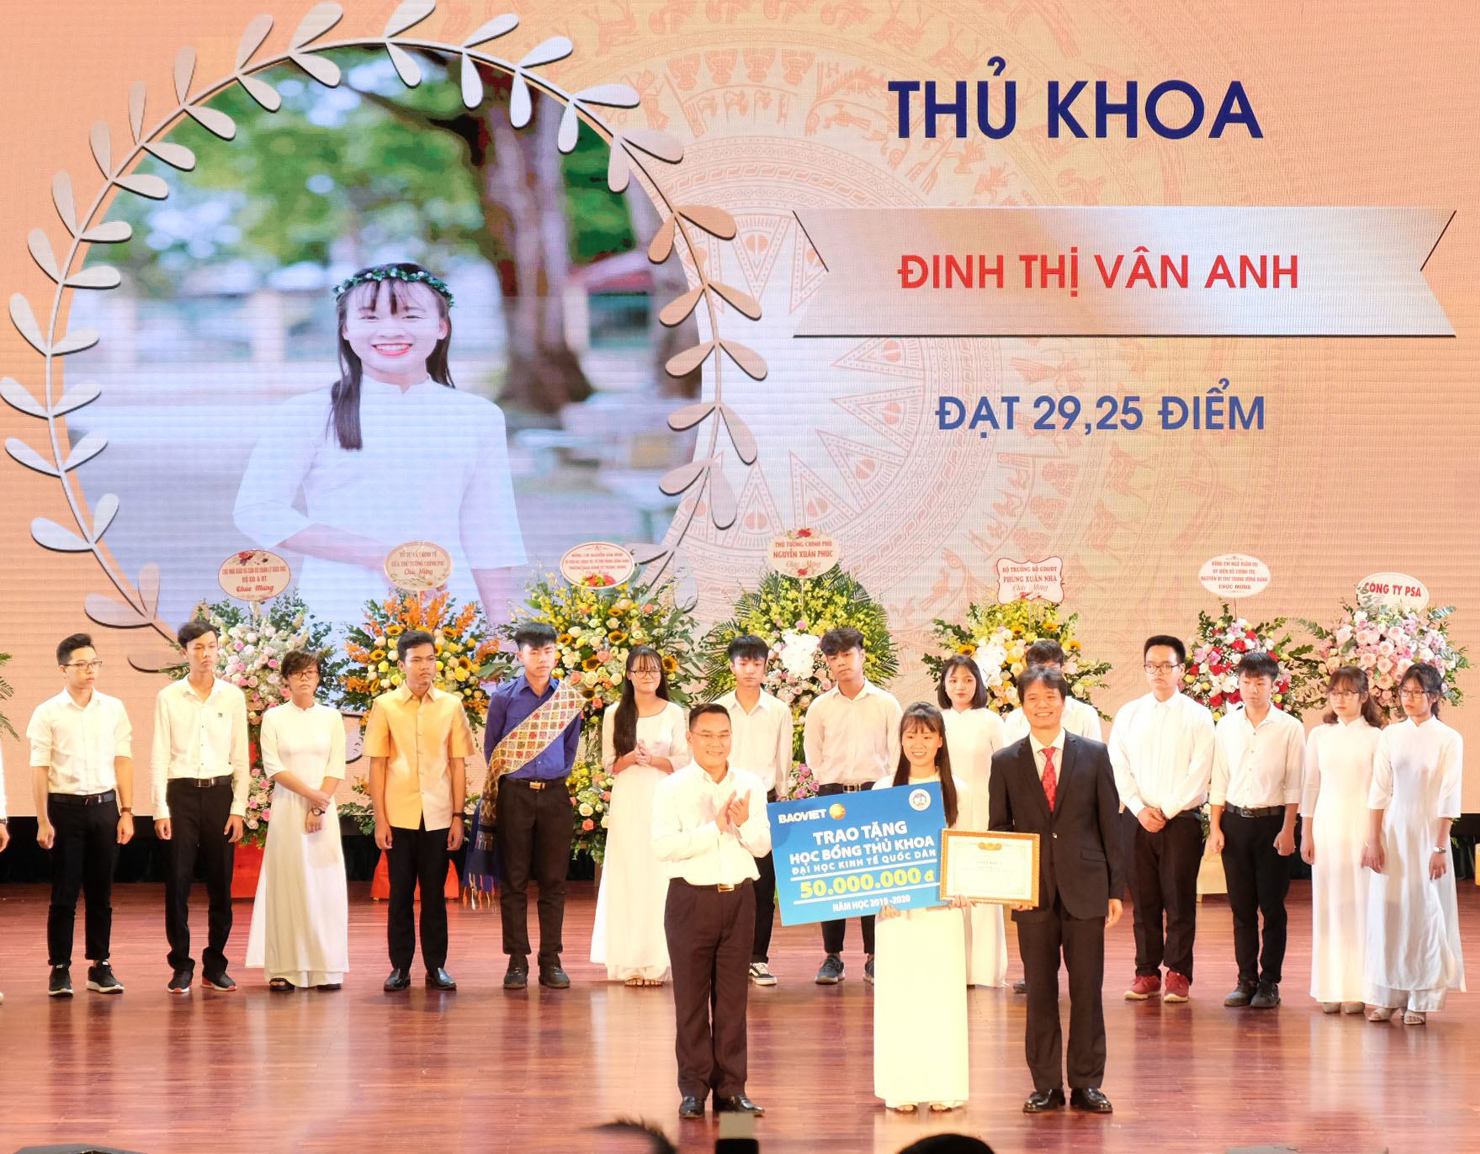 Tổng giám đốc Tập đoàn Bảo Việt trao tặng học bổng cho sinh viên trường Đại học Kinh tế Quốc dân.